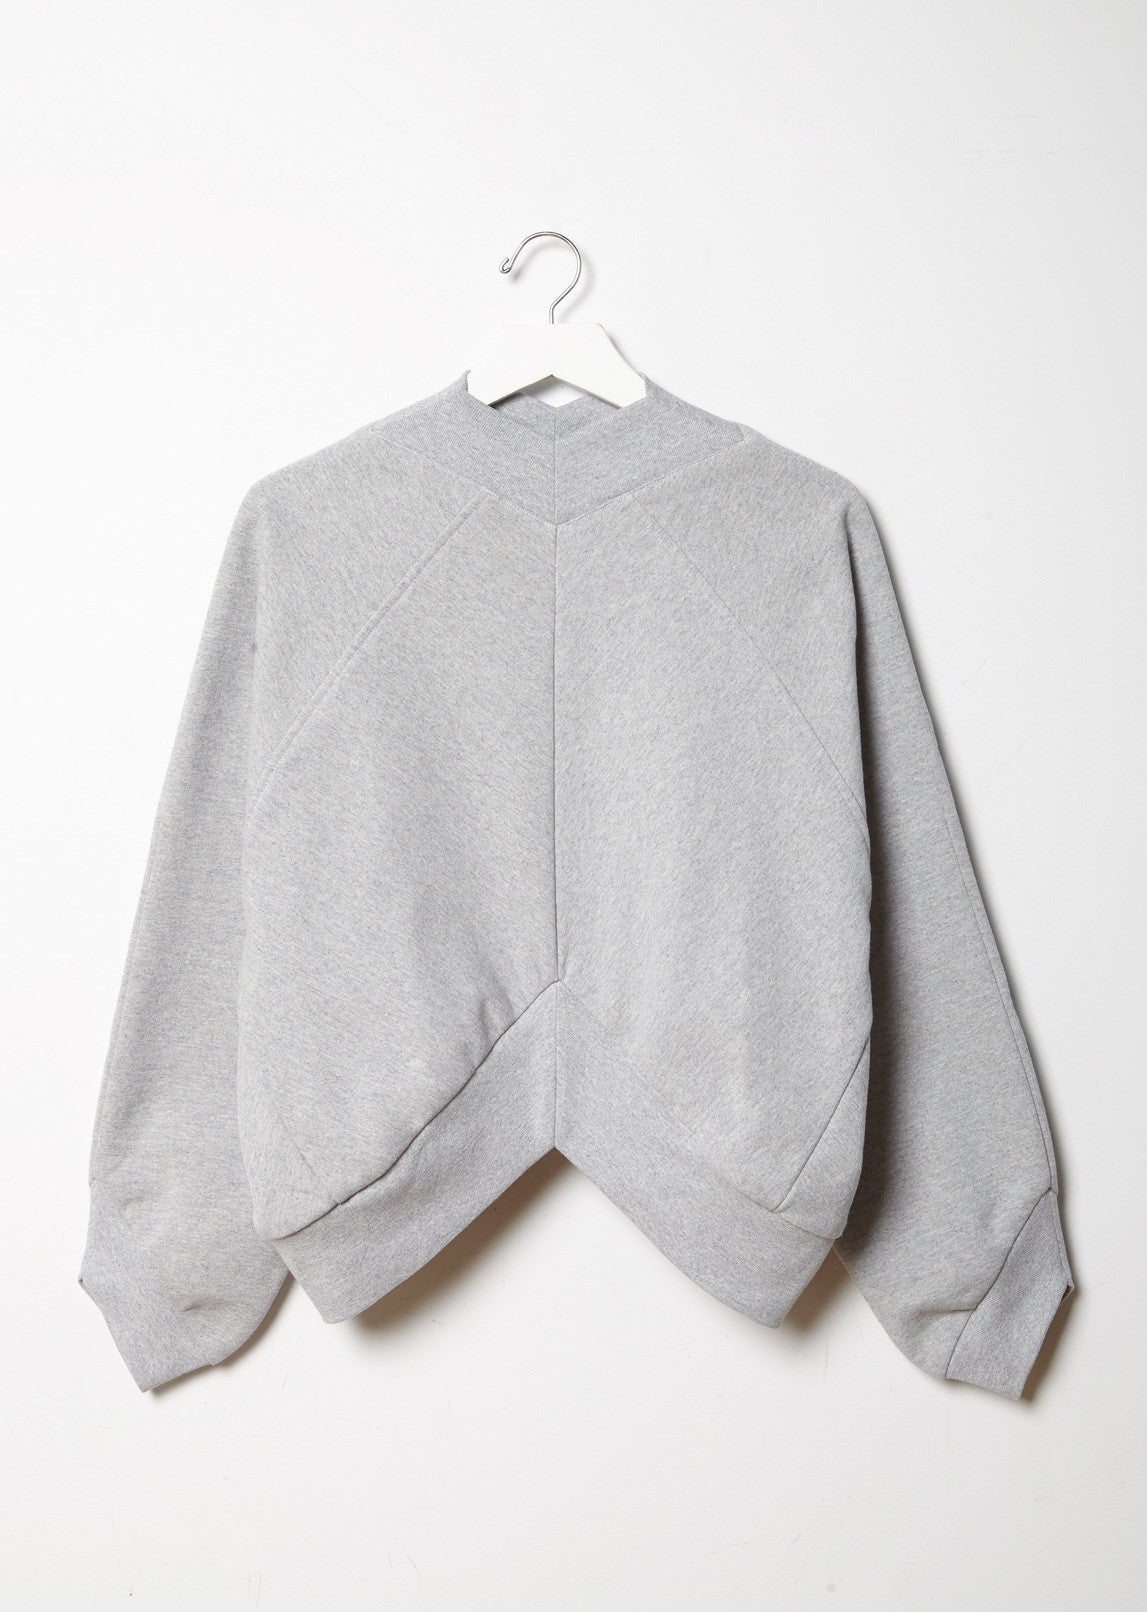 Inverted Fleece Sweatshirt by Vejas - La Gar__onne – La Garçonne